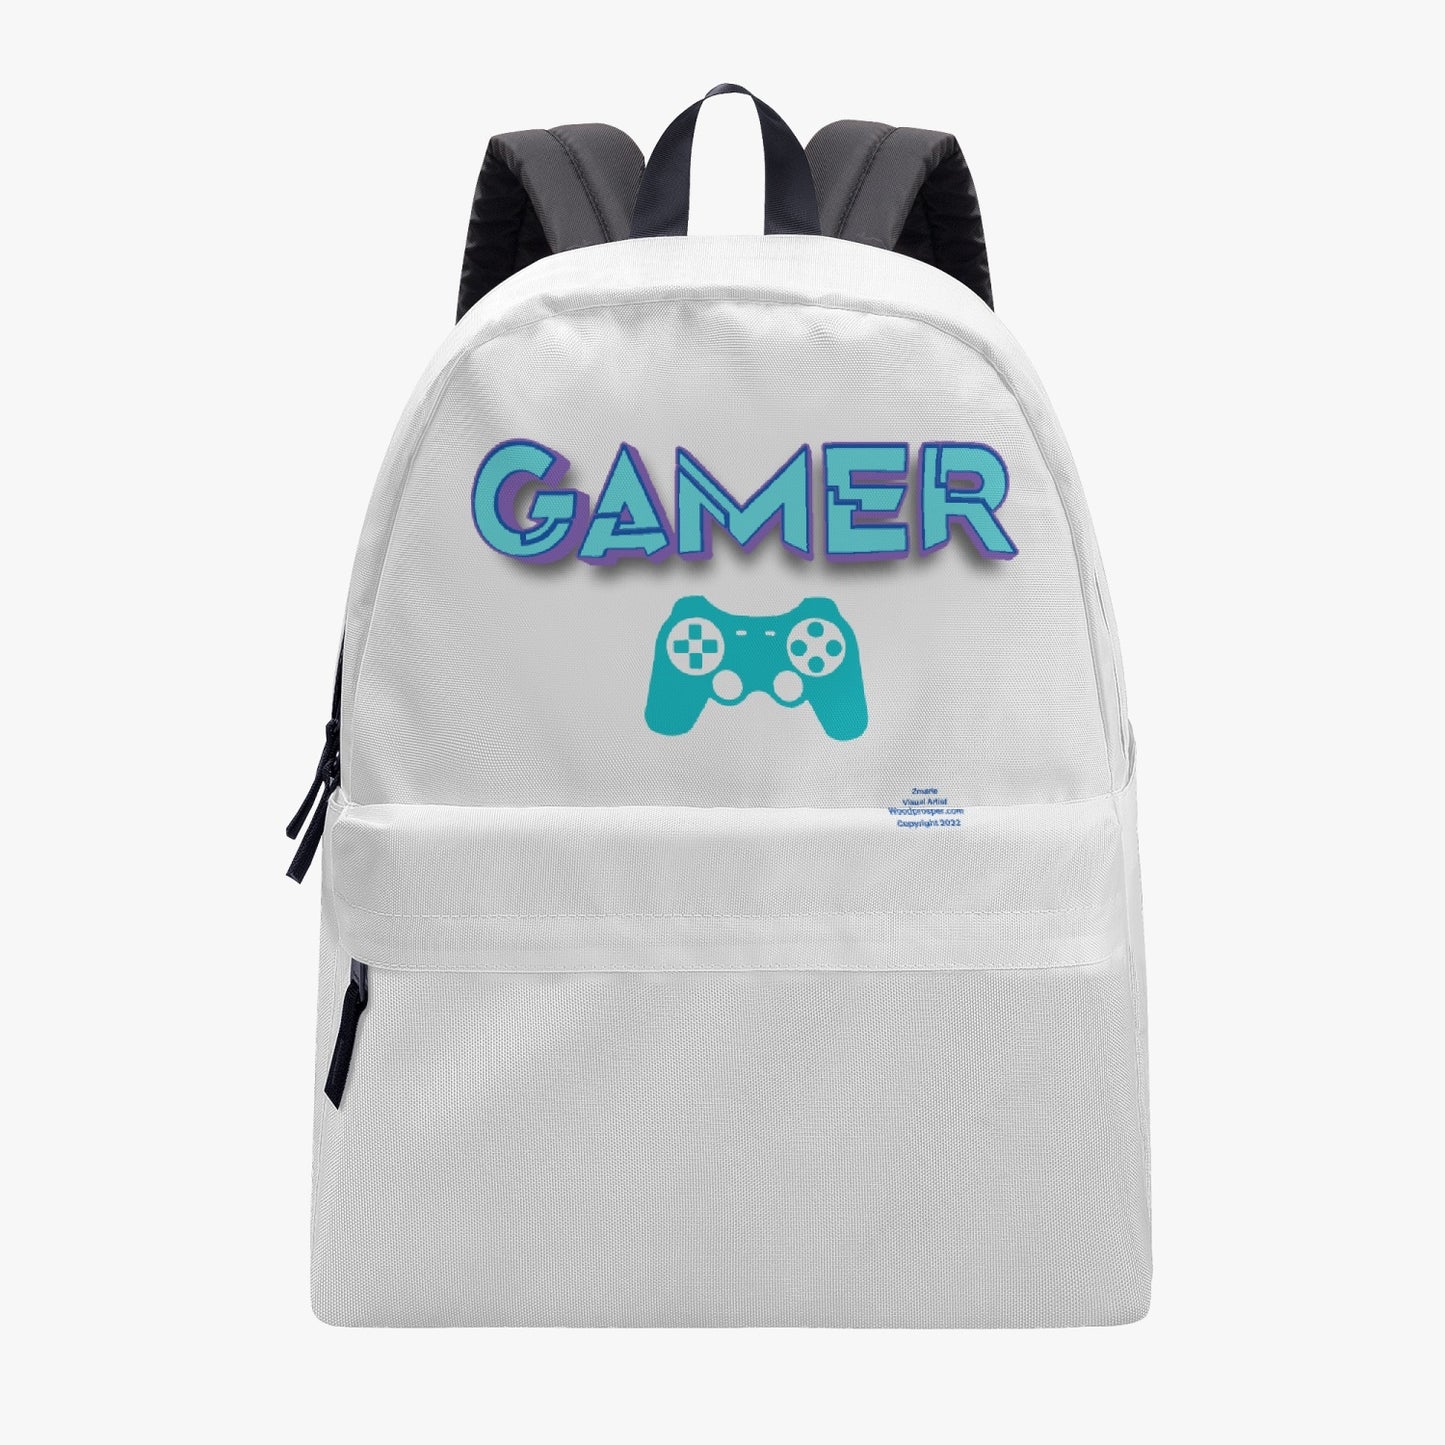 GAMER Canvas Backpack